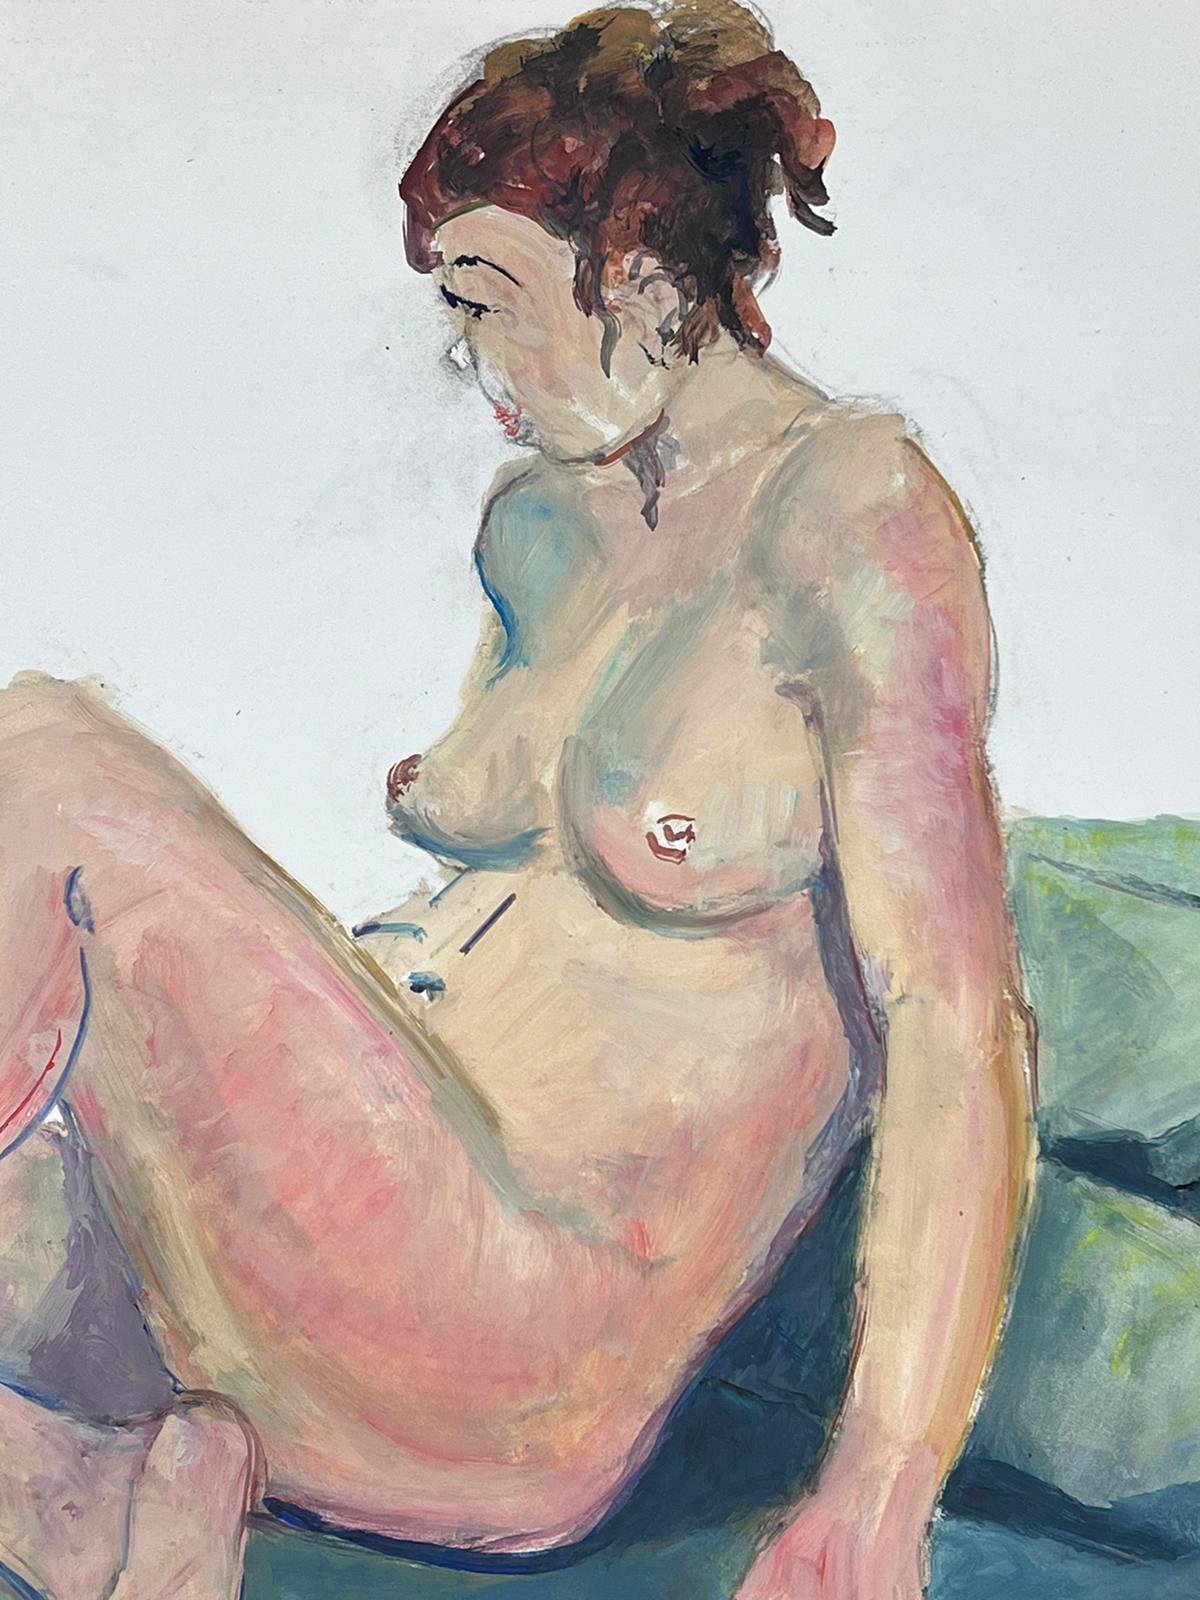 Liegesessel, Akt, Modell, französisches modernistisches Gemälde der Provence, 1970er Jahre (Impressionismus), Painting, von French Modernist